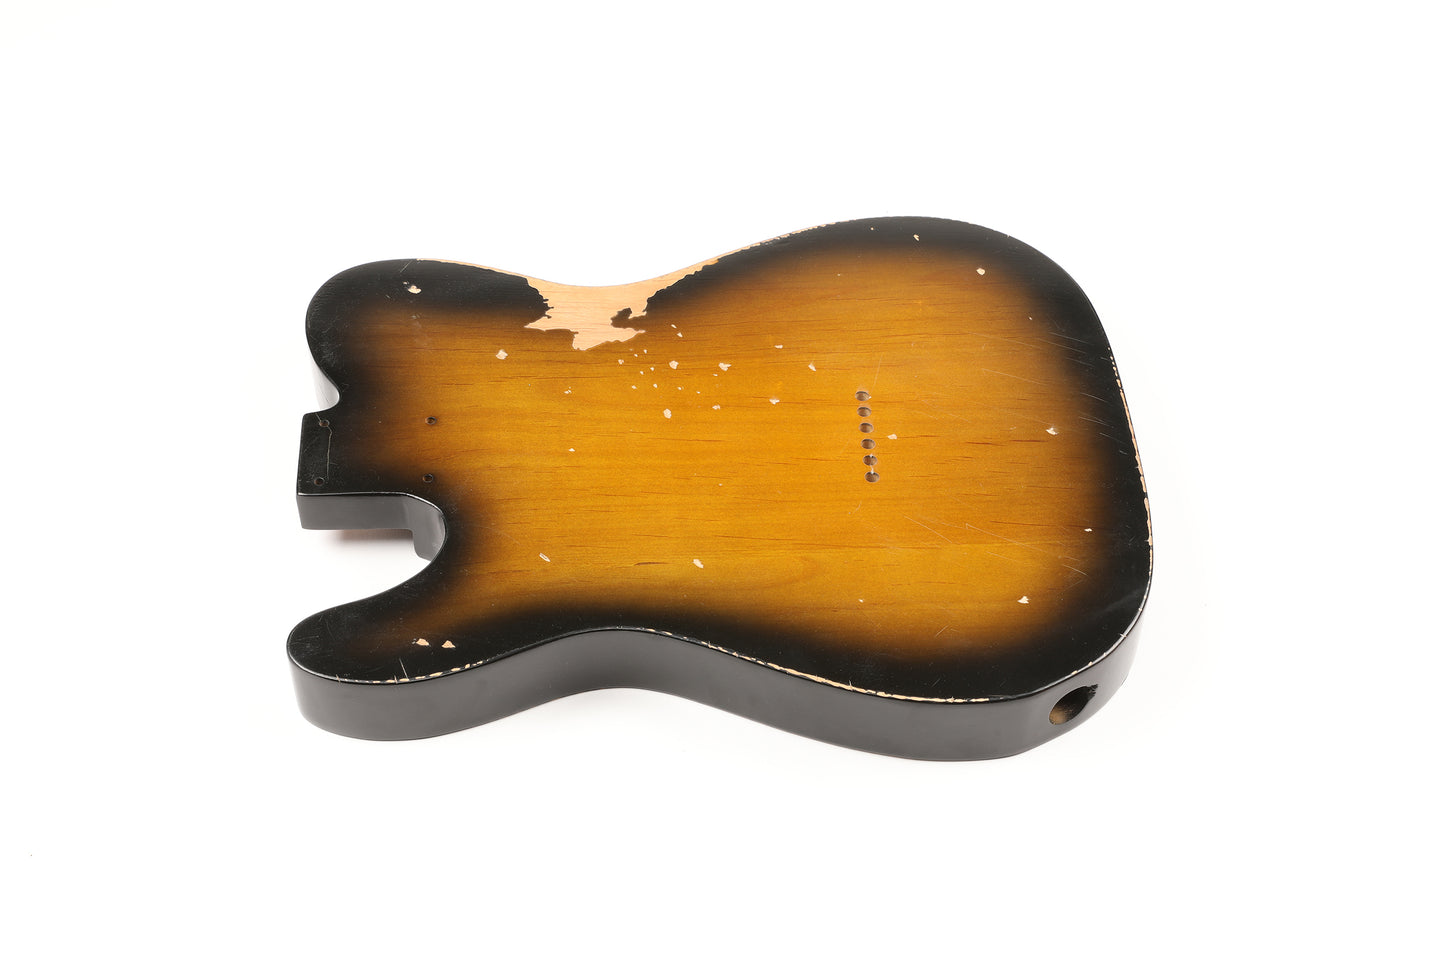 AE Guitars® T-Style Alder Replacement Guitar Body Relic Nitro Top Sunburst